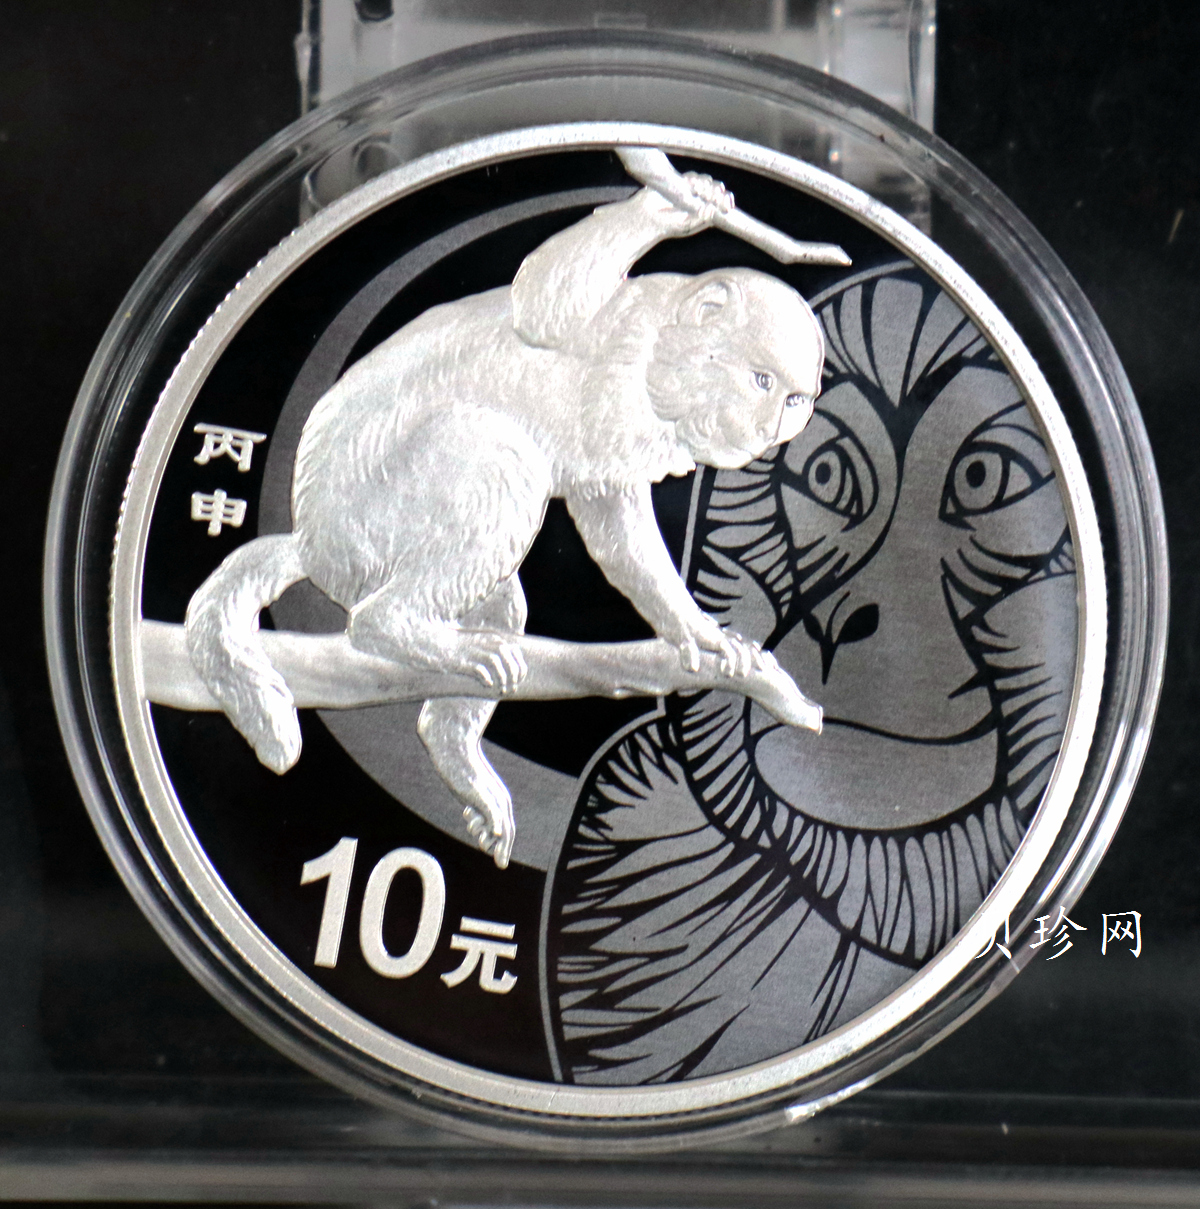 【151402】2016年丙申猴年生肖1盎司精制银币